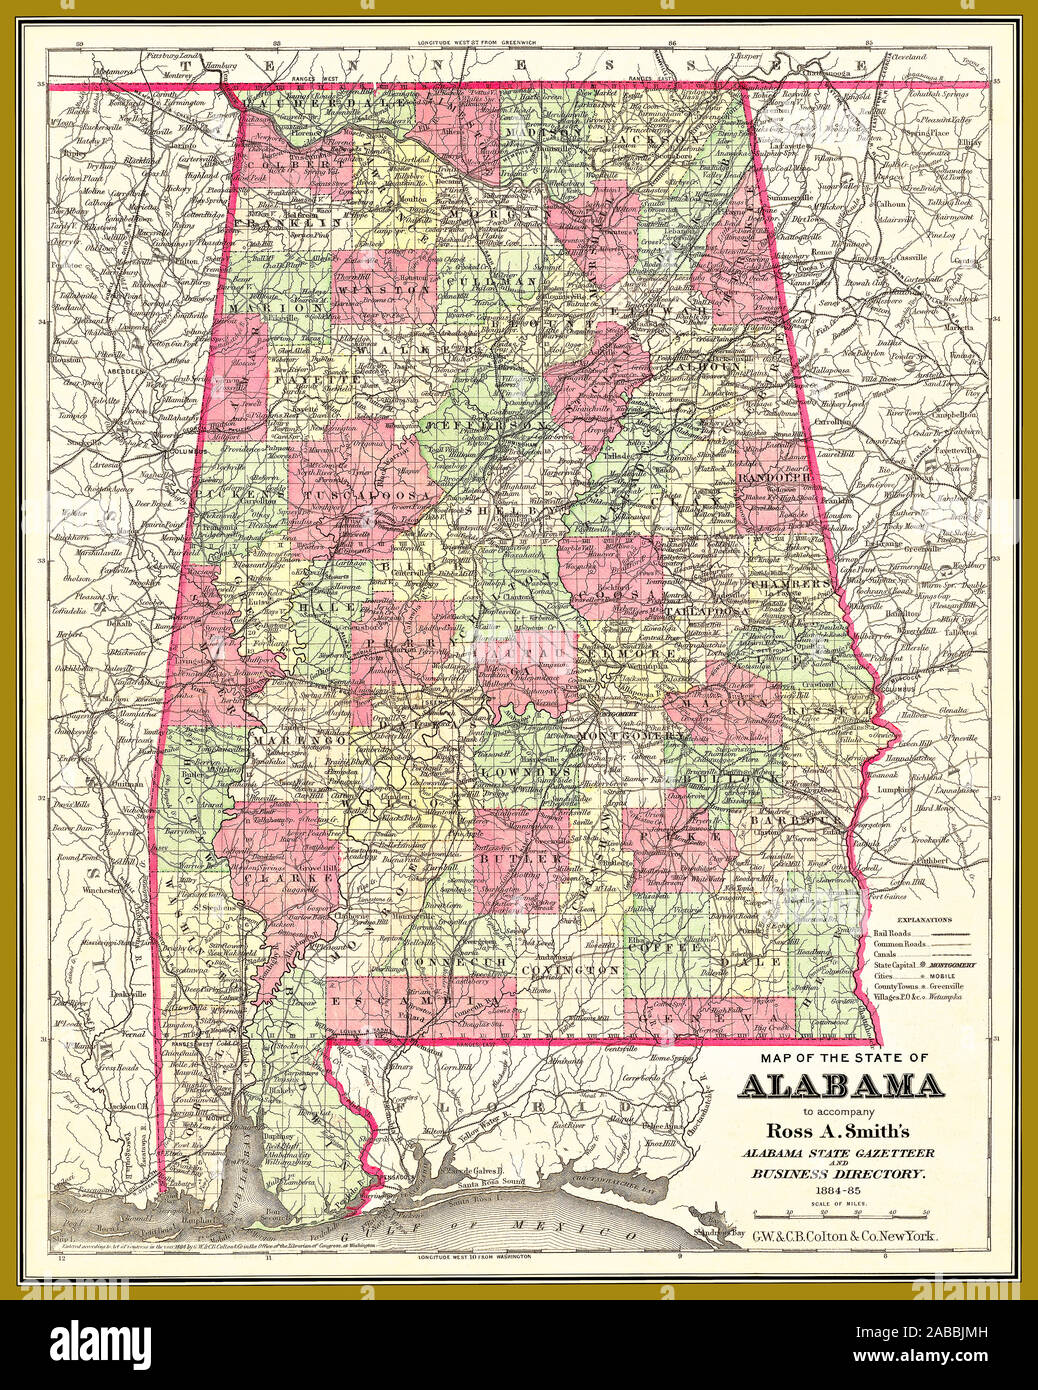 Antike restaurierte Reproduktion auf einer Karte des Bundesstaats Alabama in die Alabama State Ortsverzeichnis und Business Directory, 1884-85 verwendet. Stockfoto